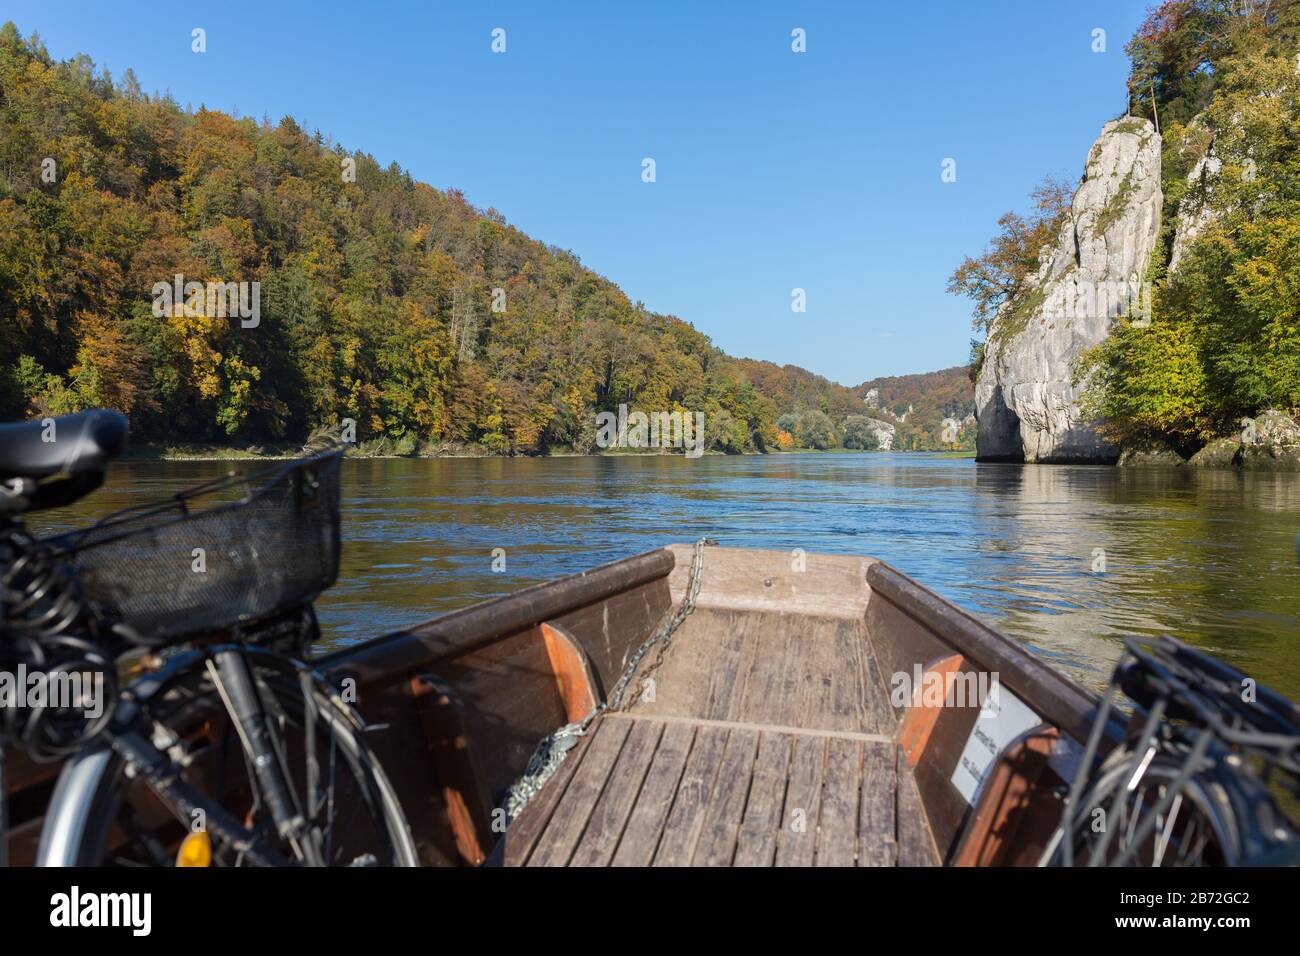 Blick von einem Holzboot auf der donau (Donau). In der Nähe des sogenannten 'Donaudurchbruchs' (enger Canyon). Gefühl von Freiheit und Abenteuer. Stockfoto